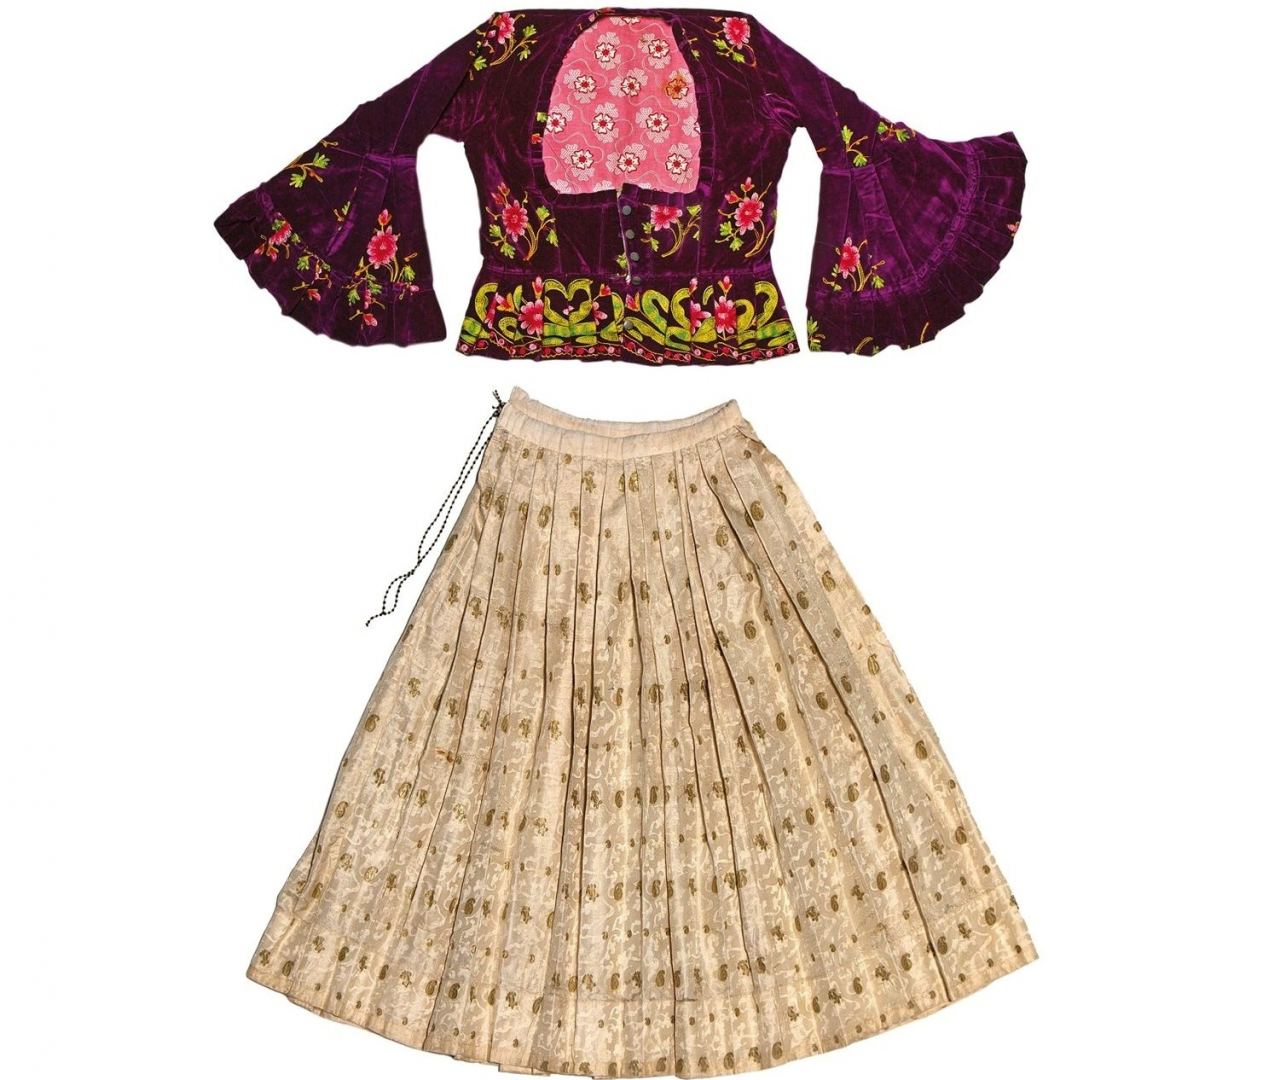 Одежда - 9/10-ых красоты, или Национальные азербайджанские костюмы (ФОТО)